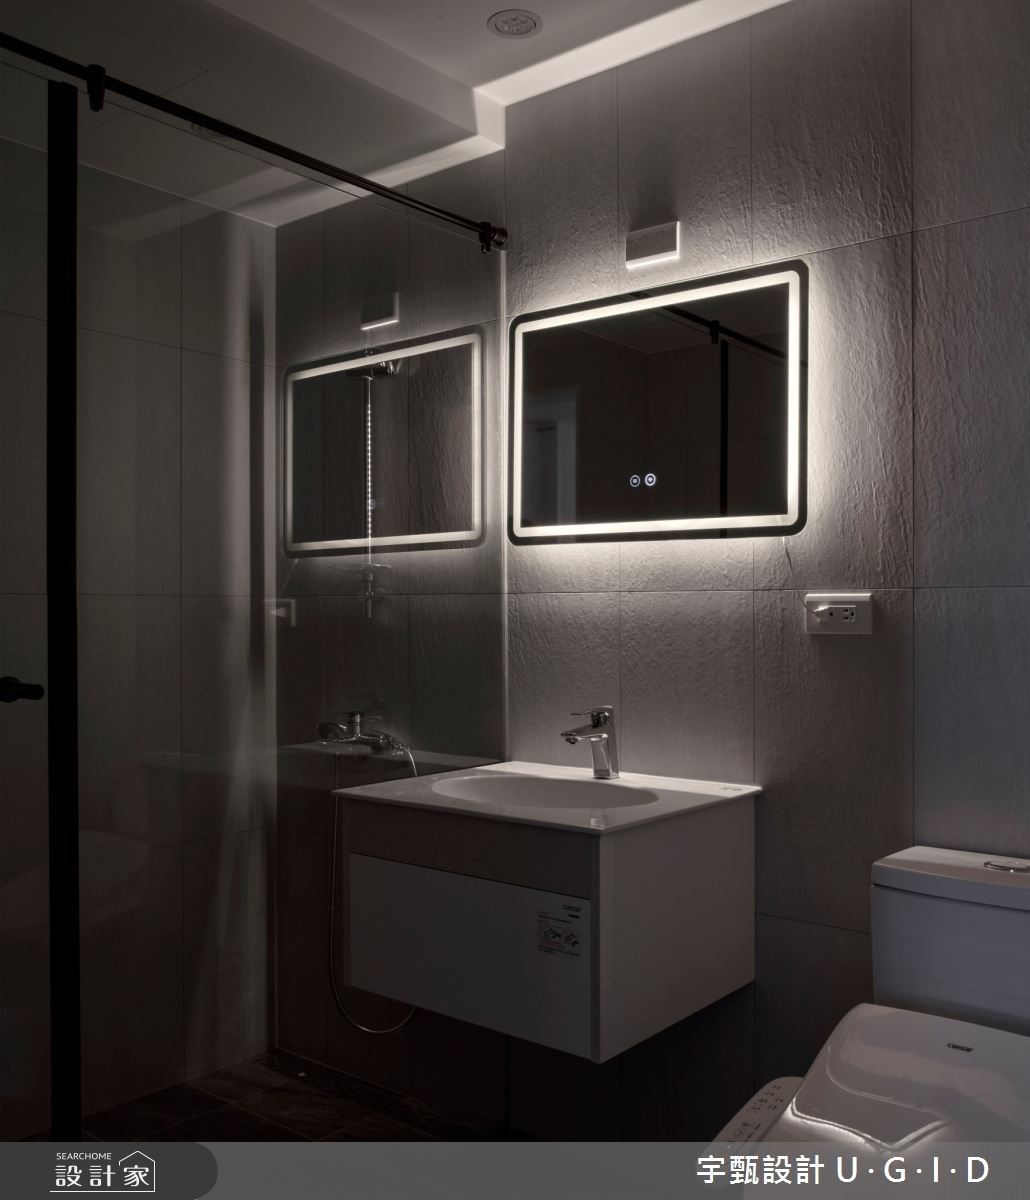 設計師將主衛浴水電都重新配置，開了兩道門，一方面可以成為主臥室的衛浴空間，也能兼做客衛浴空間使用。